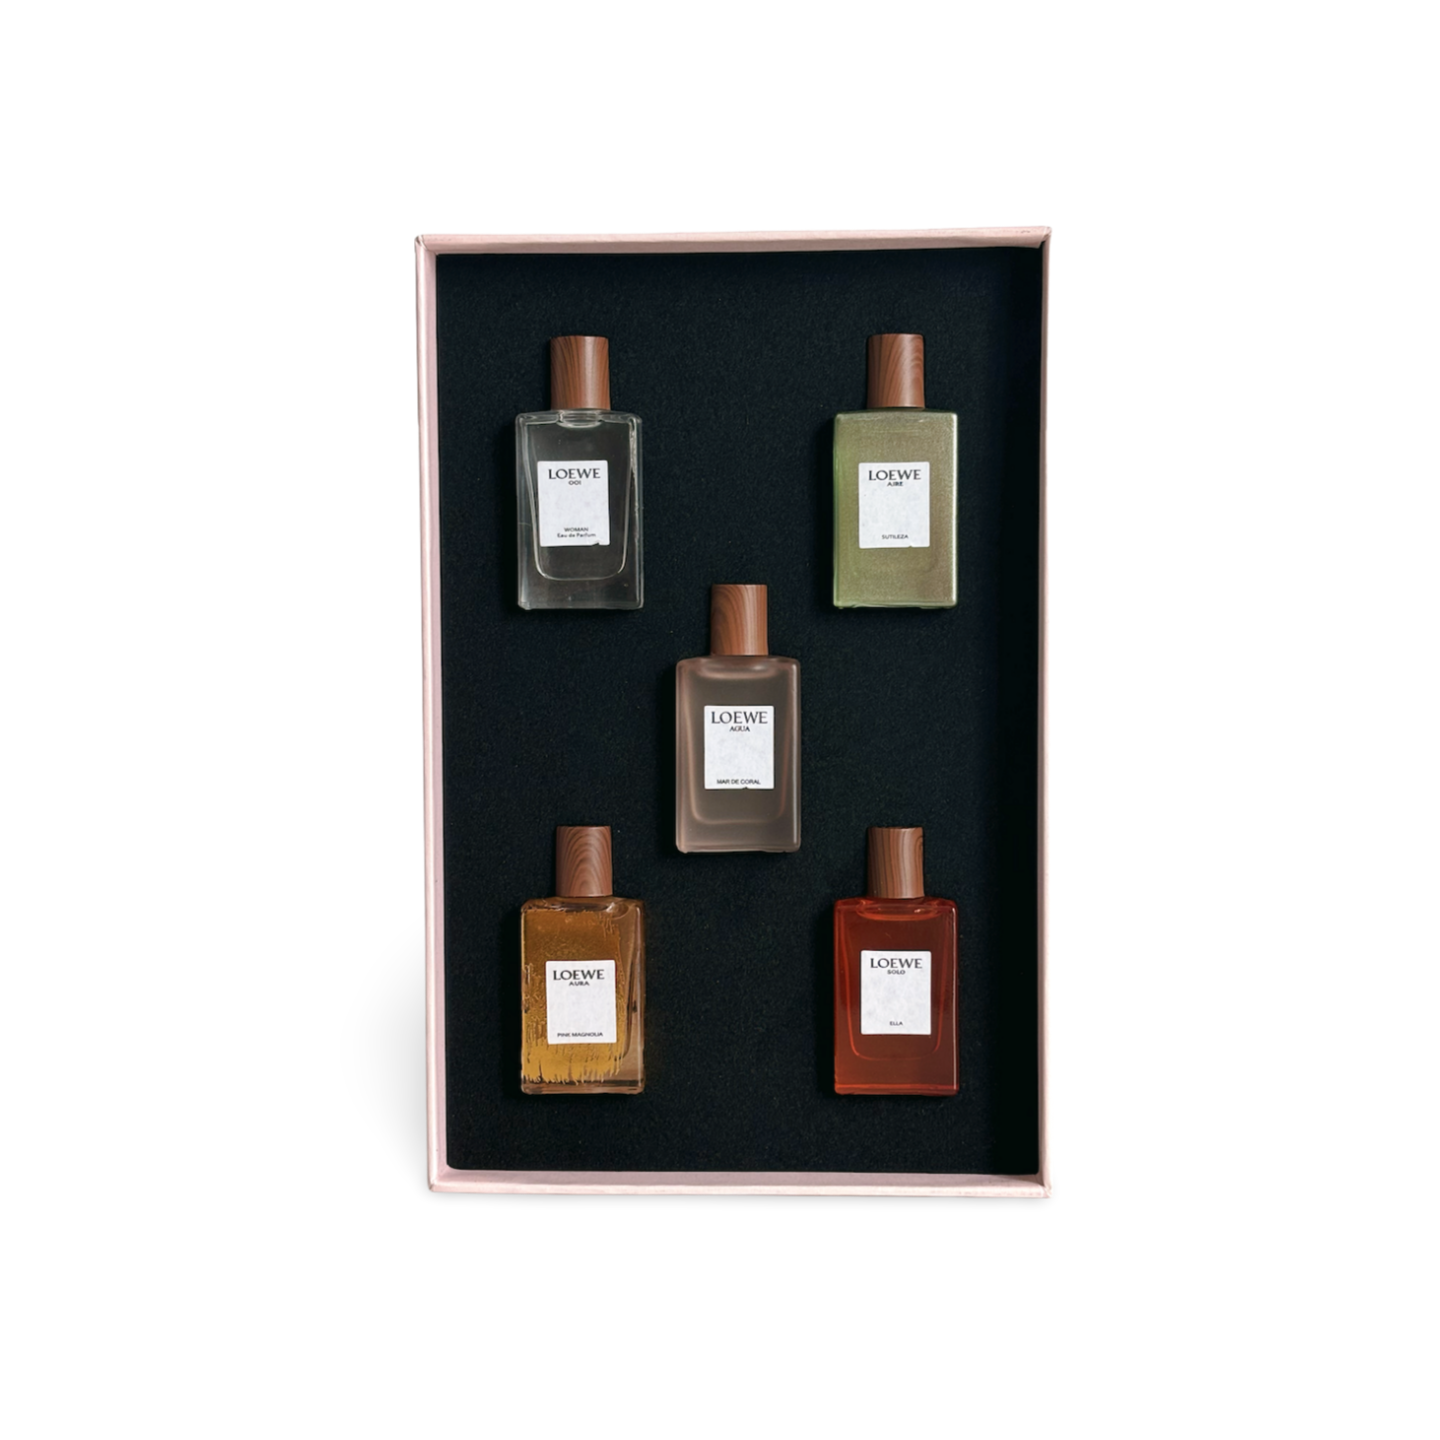 Fragrance sets